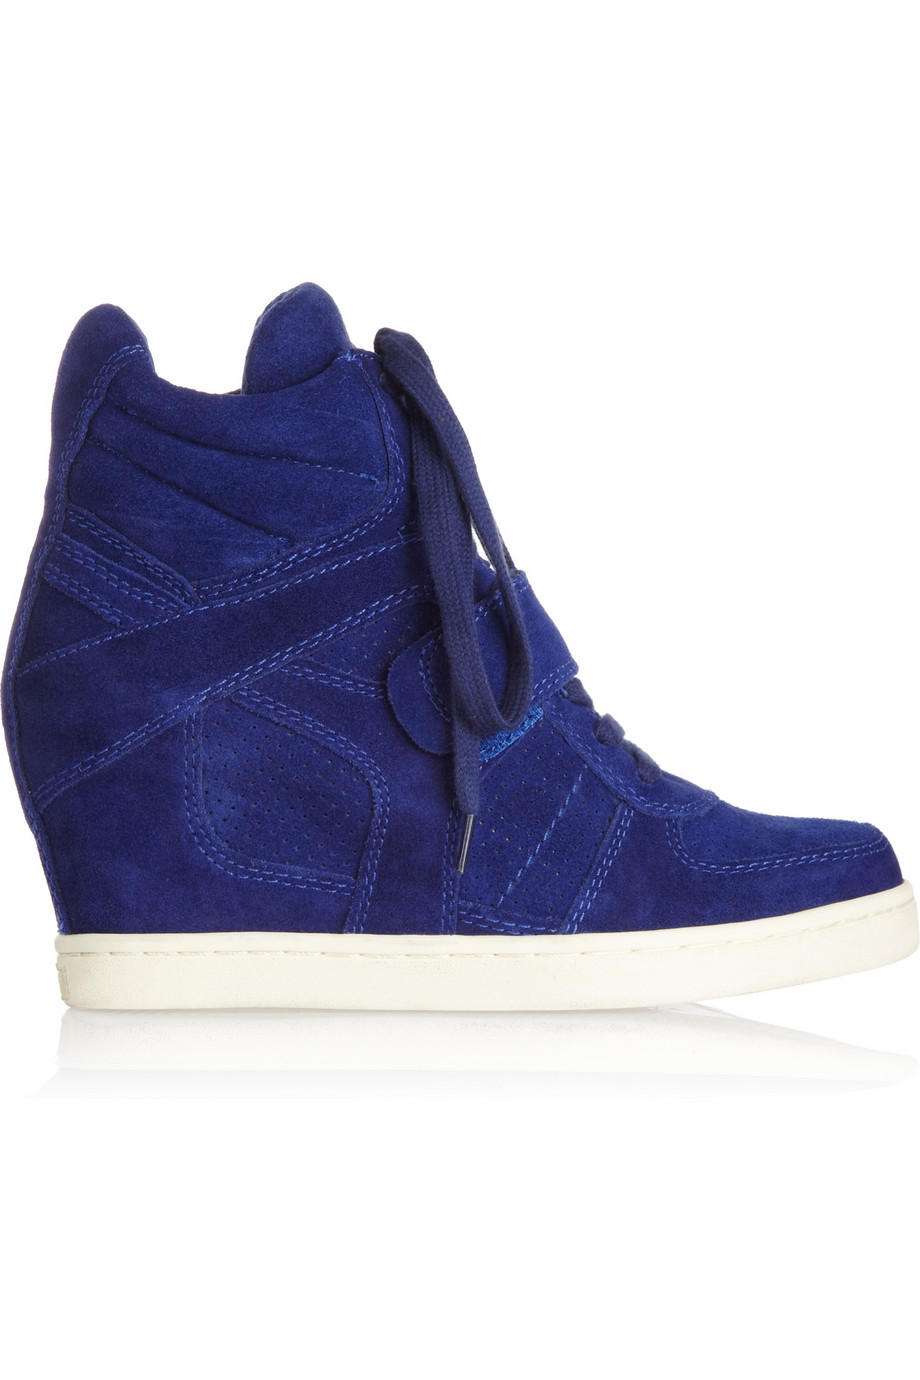 Ash Cool Suede Wedge Hightop Sneakers in Blue | Lyst